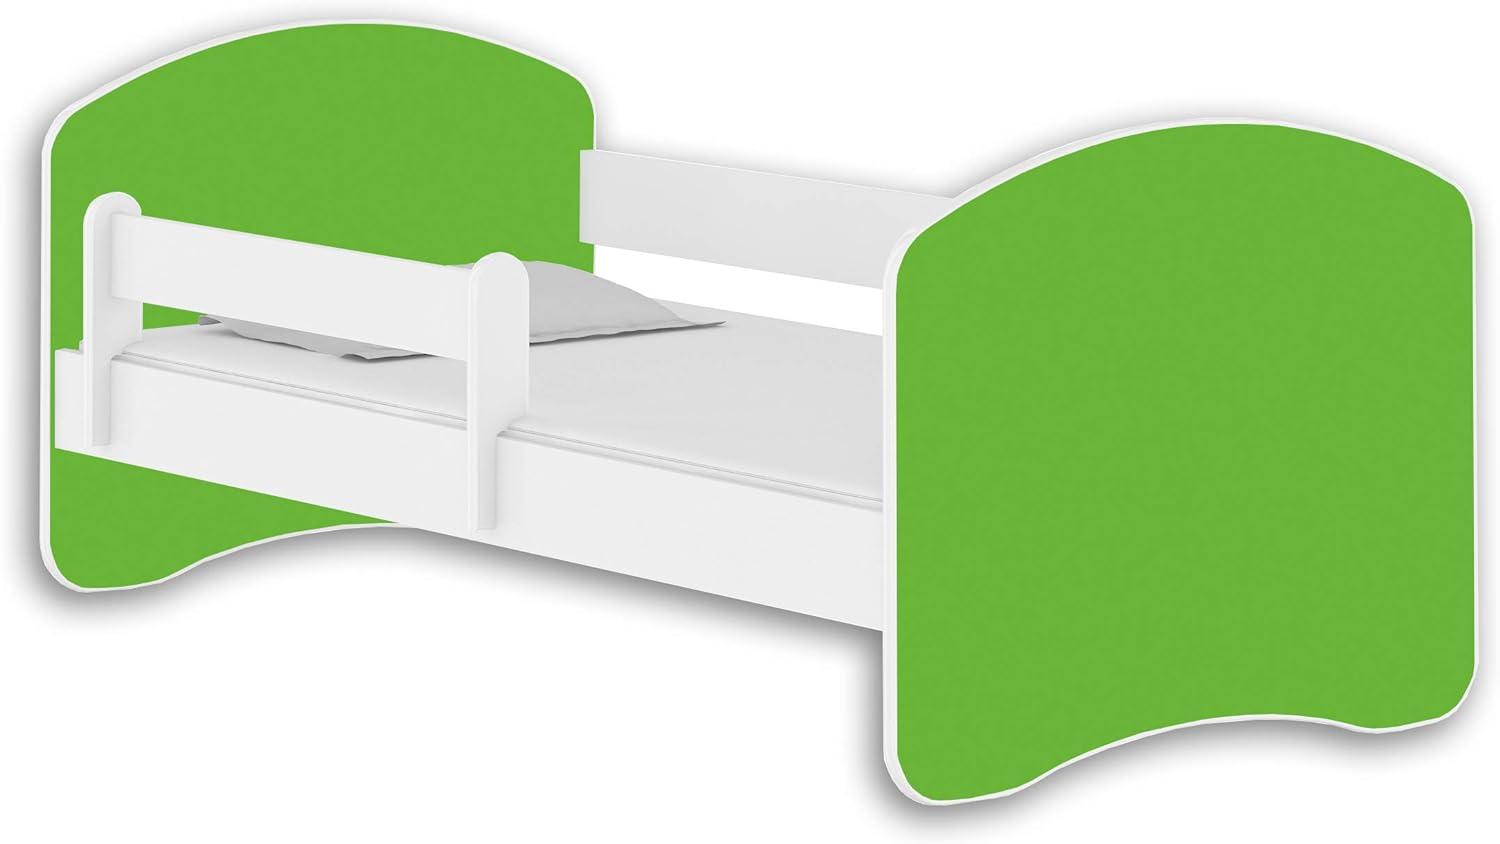 Jugendbett Kinderbett mit einer Schublade mit Rausfallschutz und Matratze Weiß ACMA II 140 160 180 (160x80 cm, Weiß - Grün) Bild 1